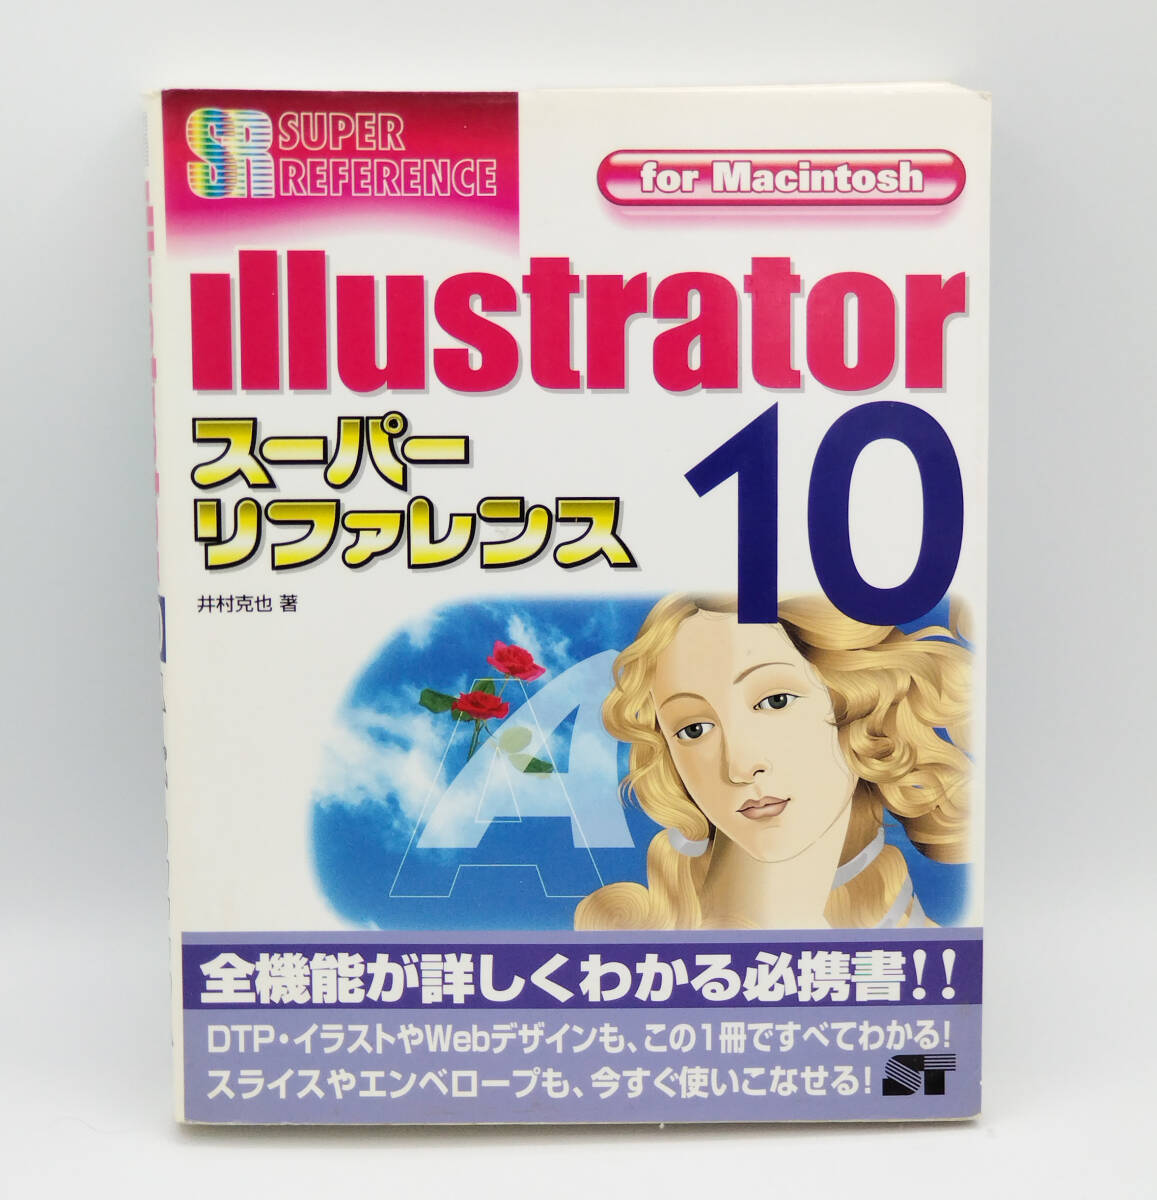 Illustrator10 super справочная информация for Macintosh *.... работа * иллюстратор *DTPкнига@* Sotec фирма 